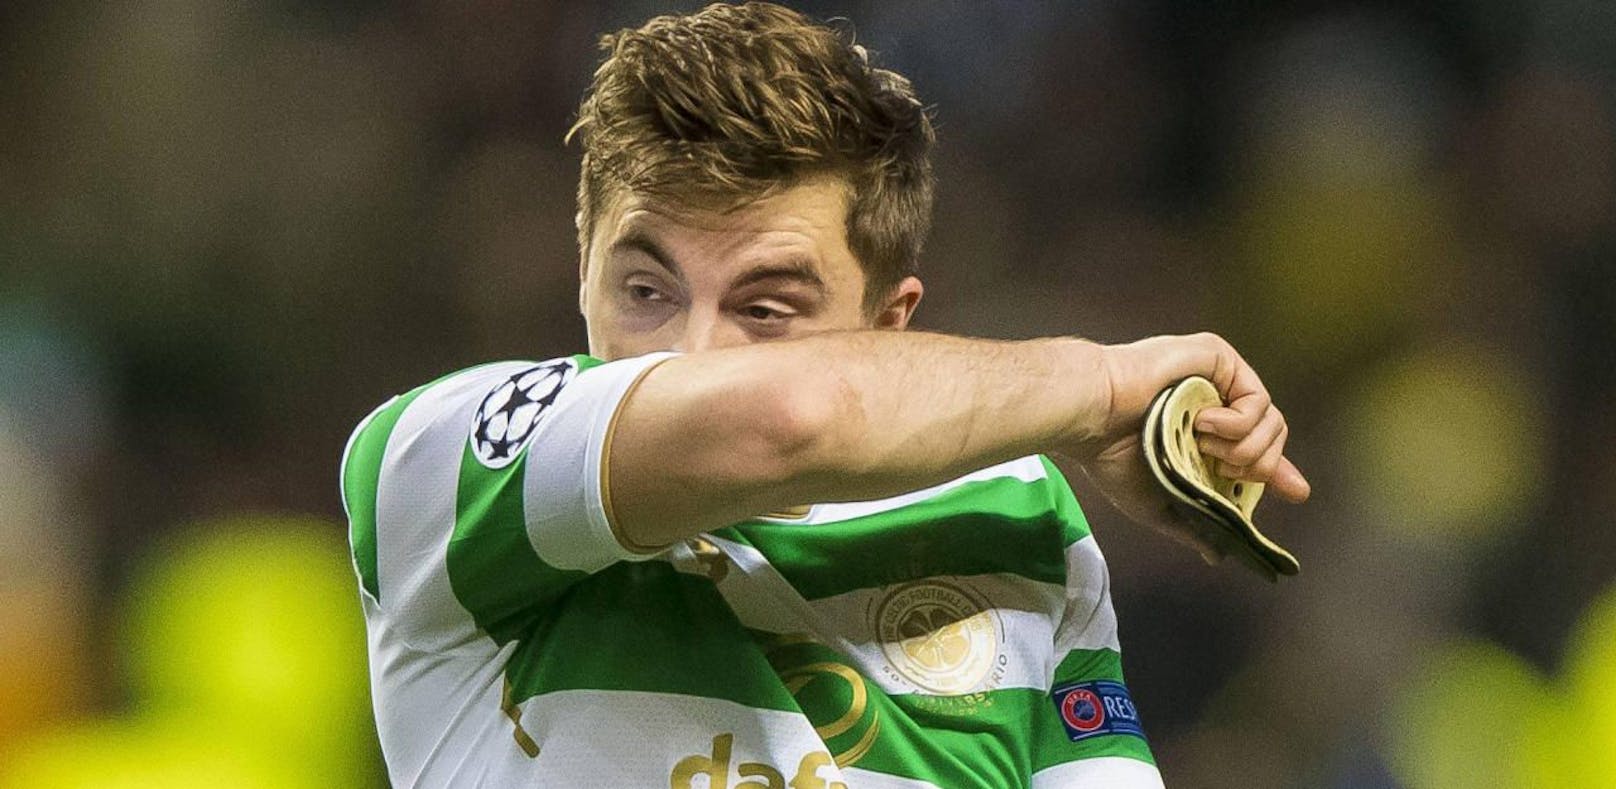 Celtic-Serie endet nach 69 Spielen mit einem Debakel